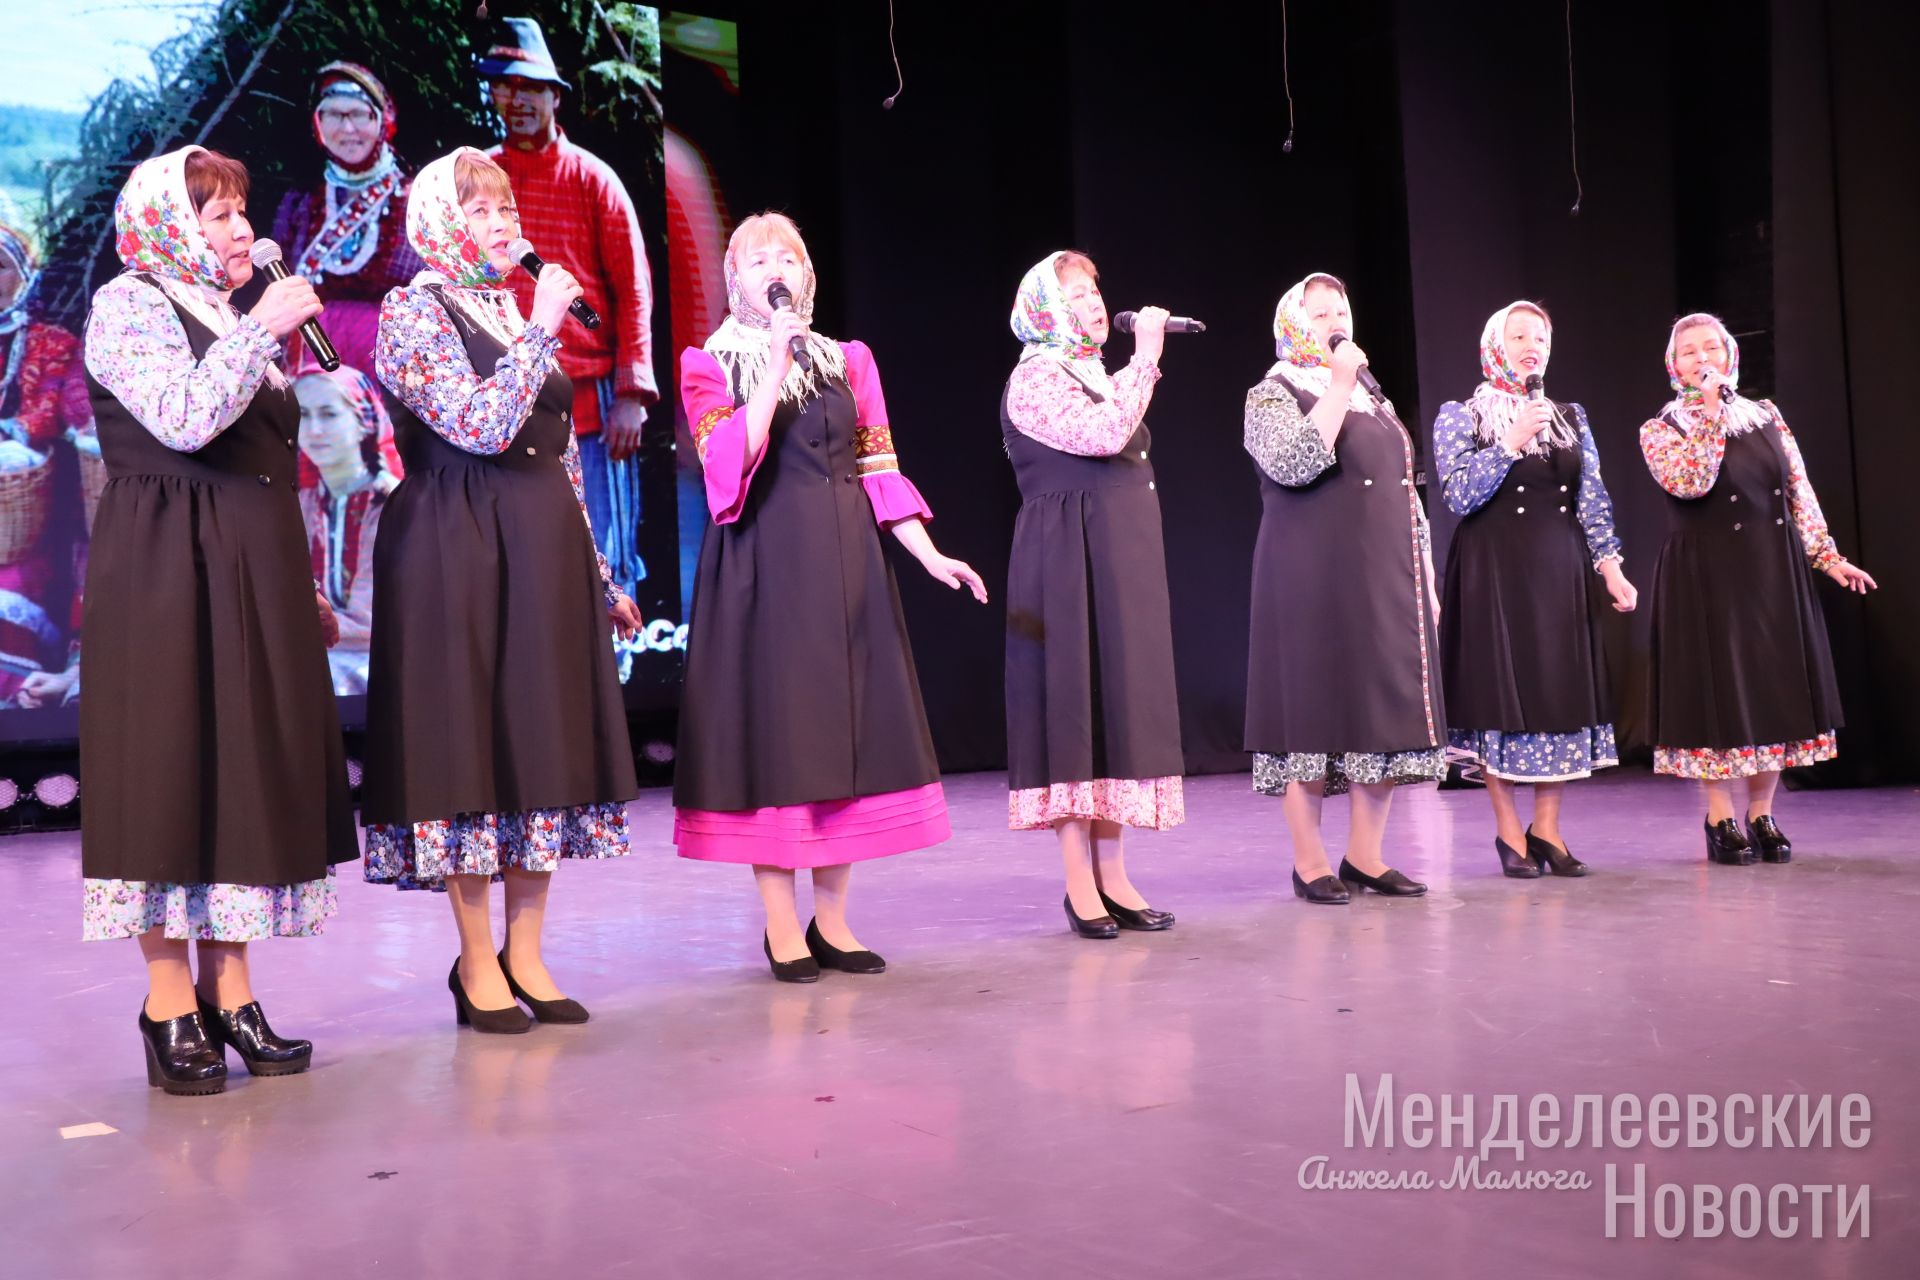 Коллективы учреждений образования Менделеевска продемонстрировали свои таланты на районном фестивале народного творчества